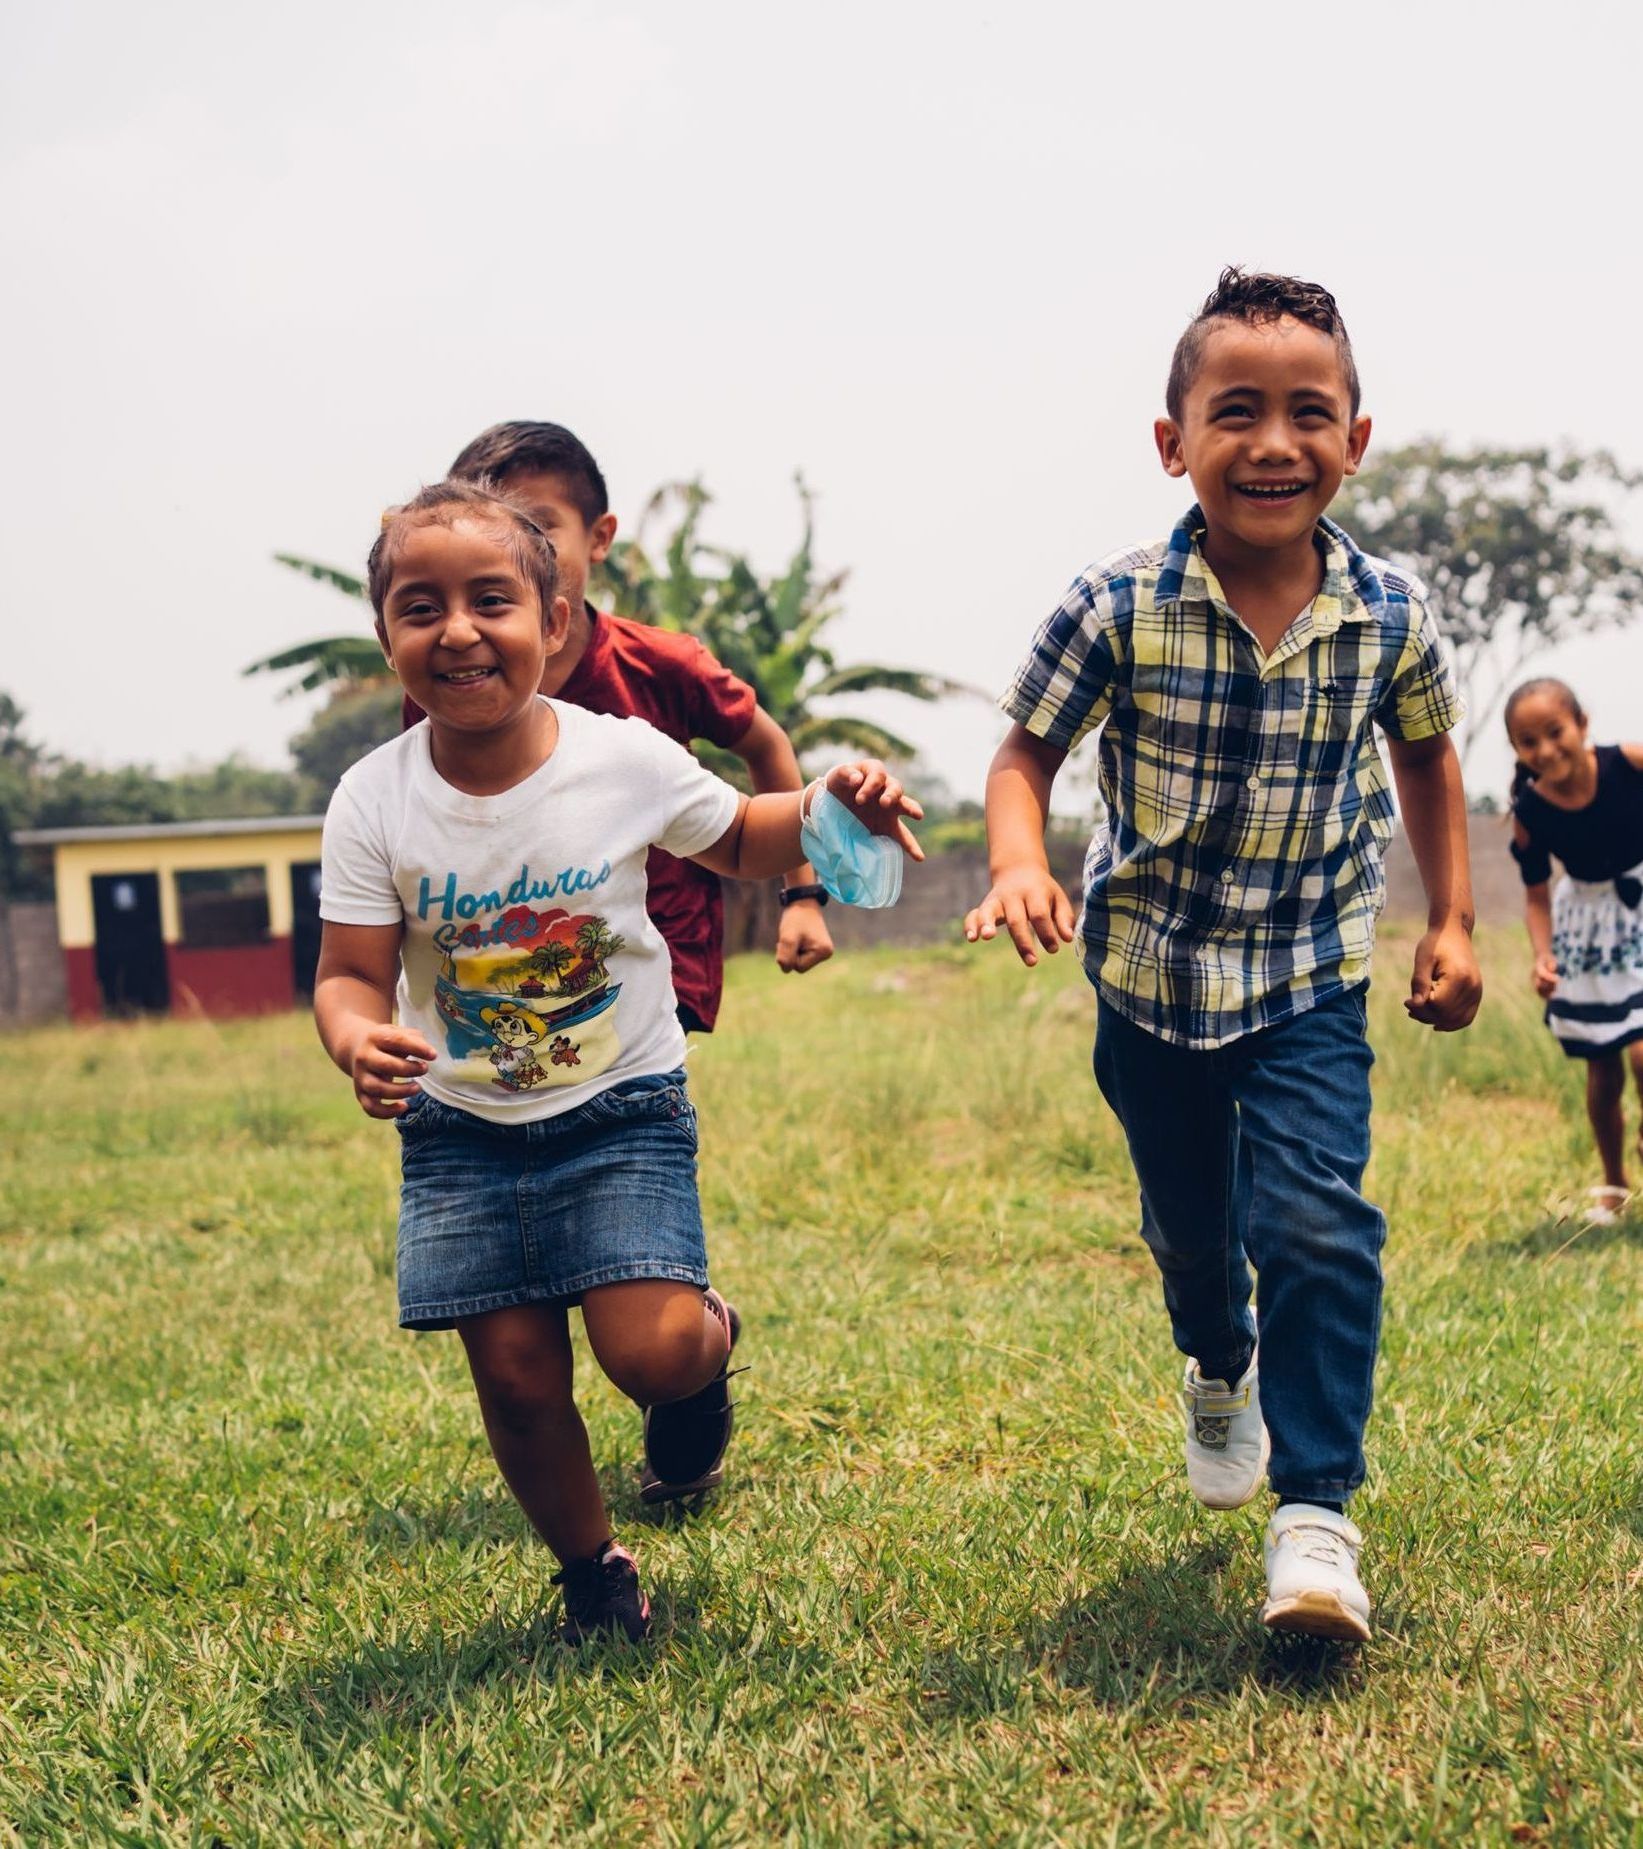 Children laugh as they run through a field.